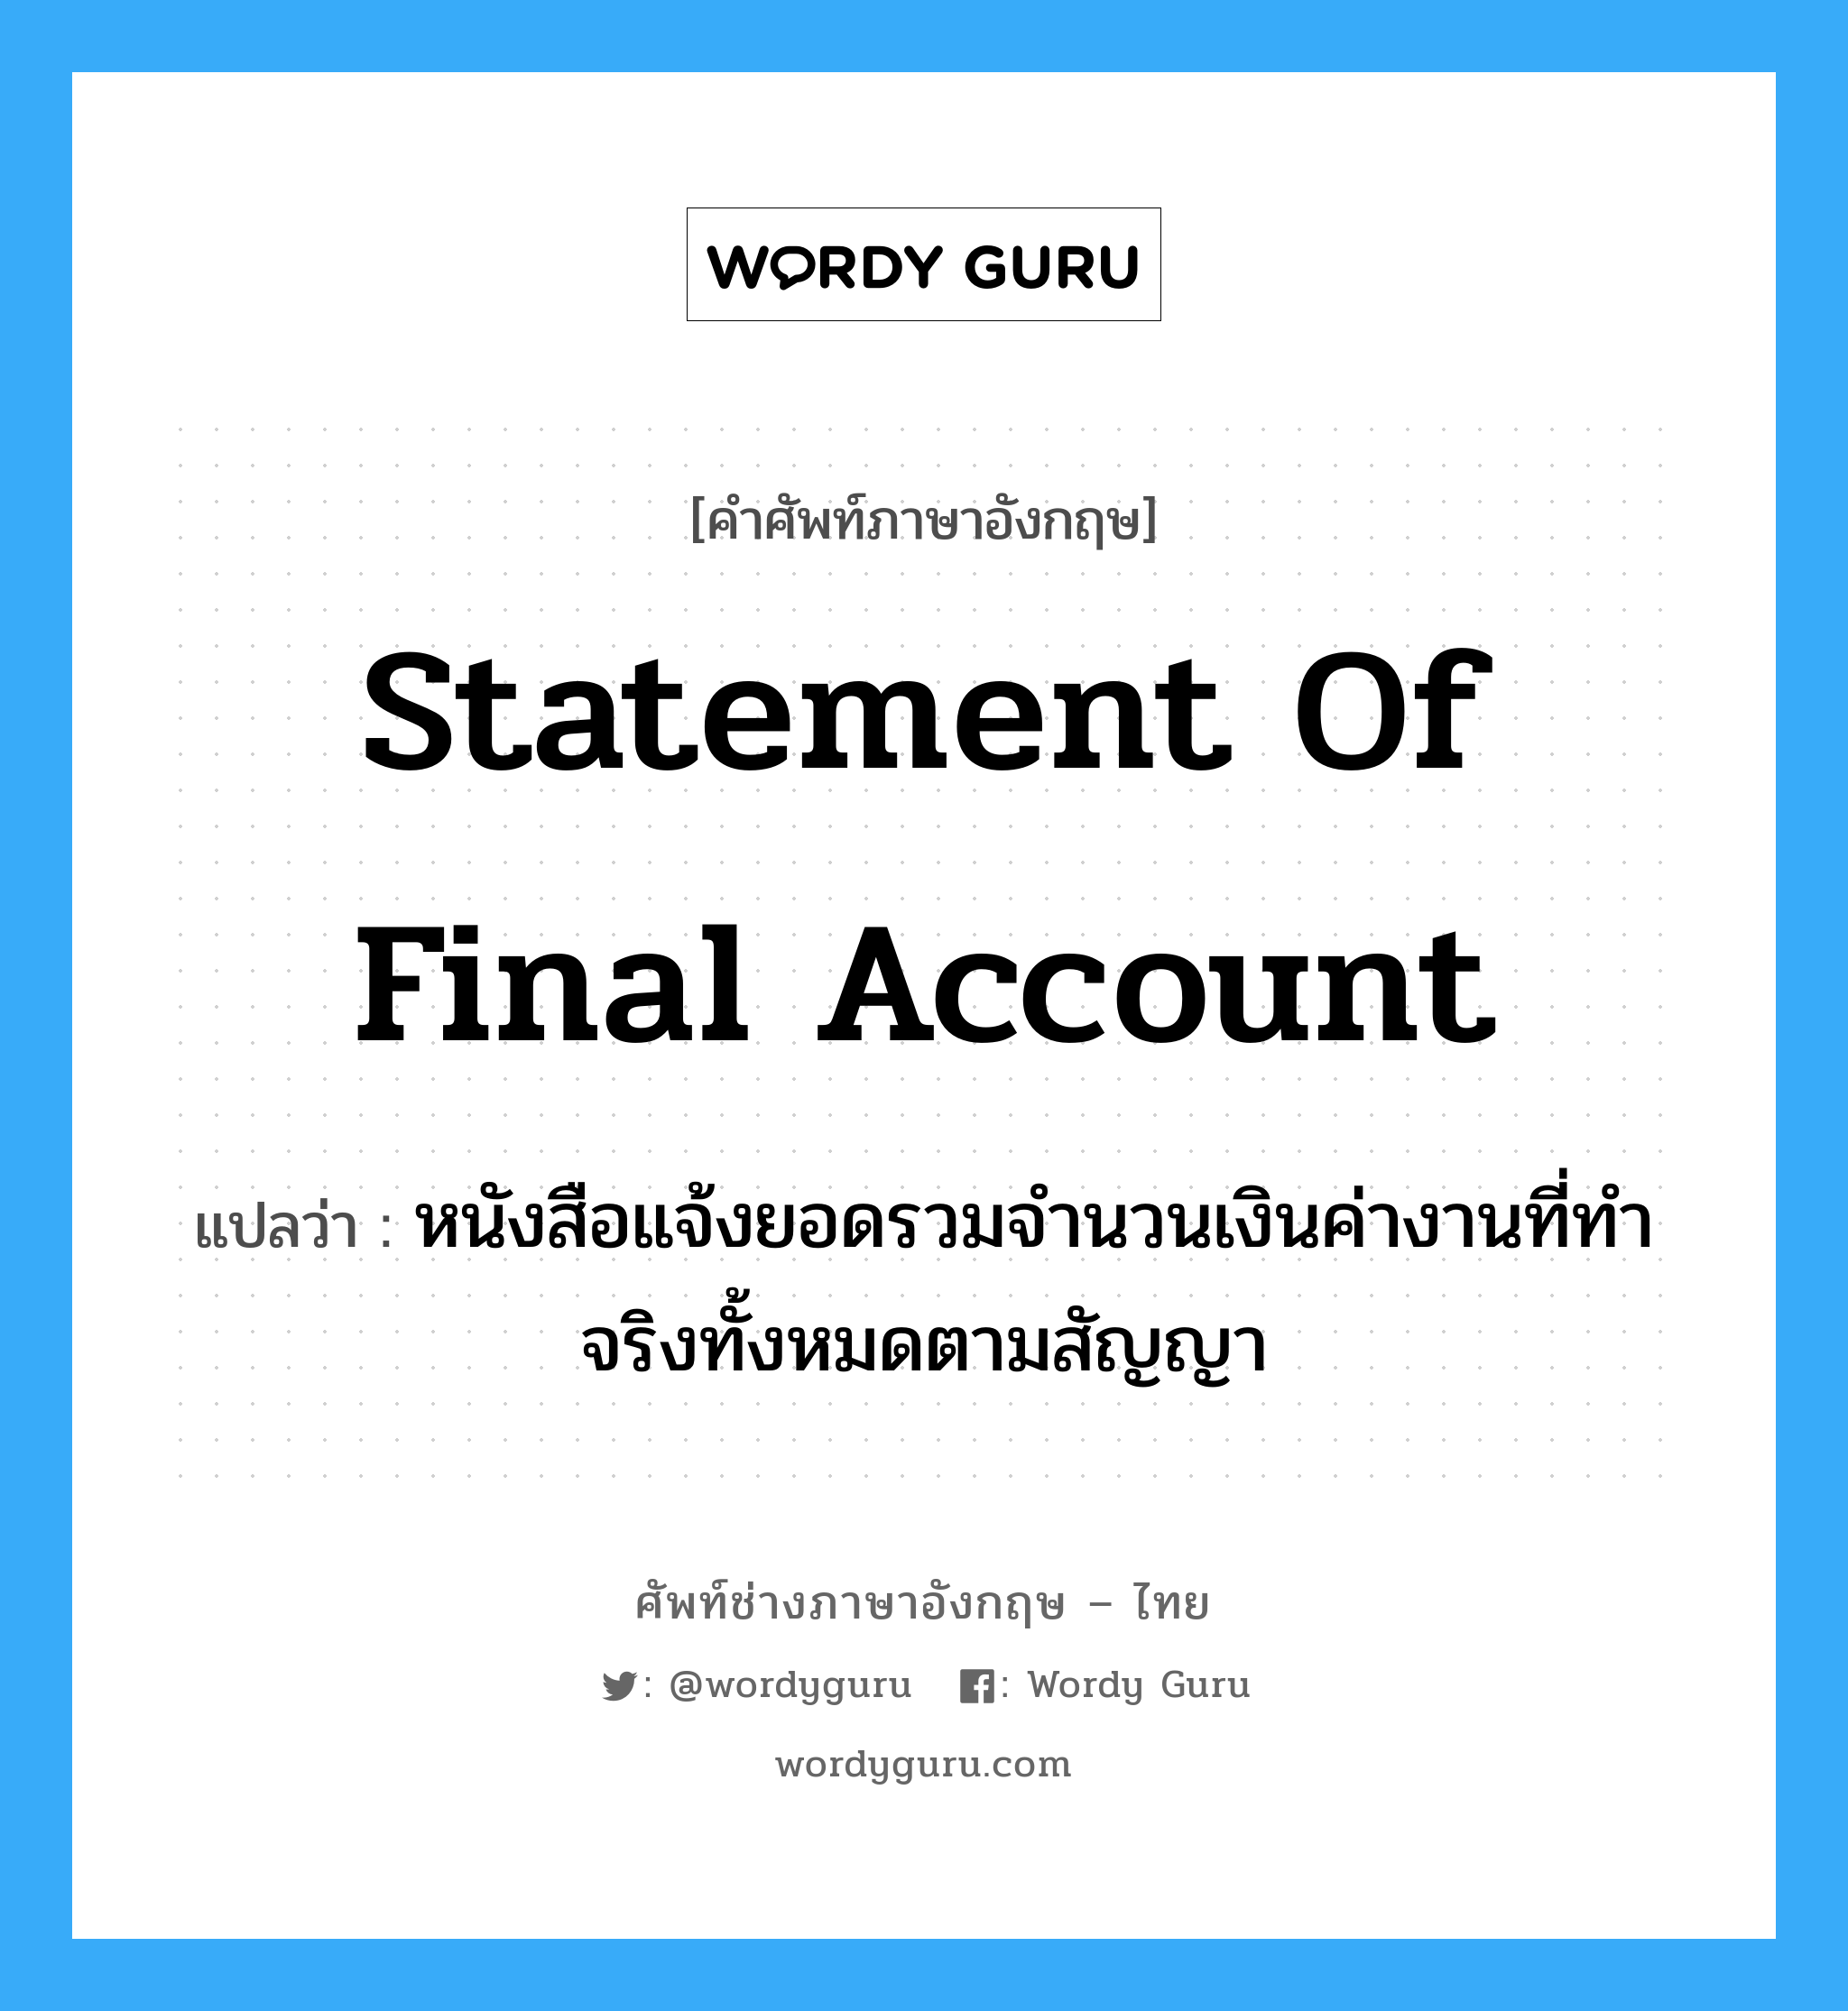 Statement of Final Account แปลว่า?, คำศัพท์ช่างภาษาอังกฤษ - ไทย Statement of Final Account คำศัพท์ภาษาอังกฤษ Statement of Final Account แปลว่า หนังสือแจ้งยอดรวมจำนวนเงินค่างานที่ทำจริงทั้งหมดตามสัญญา